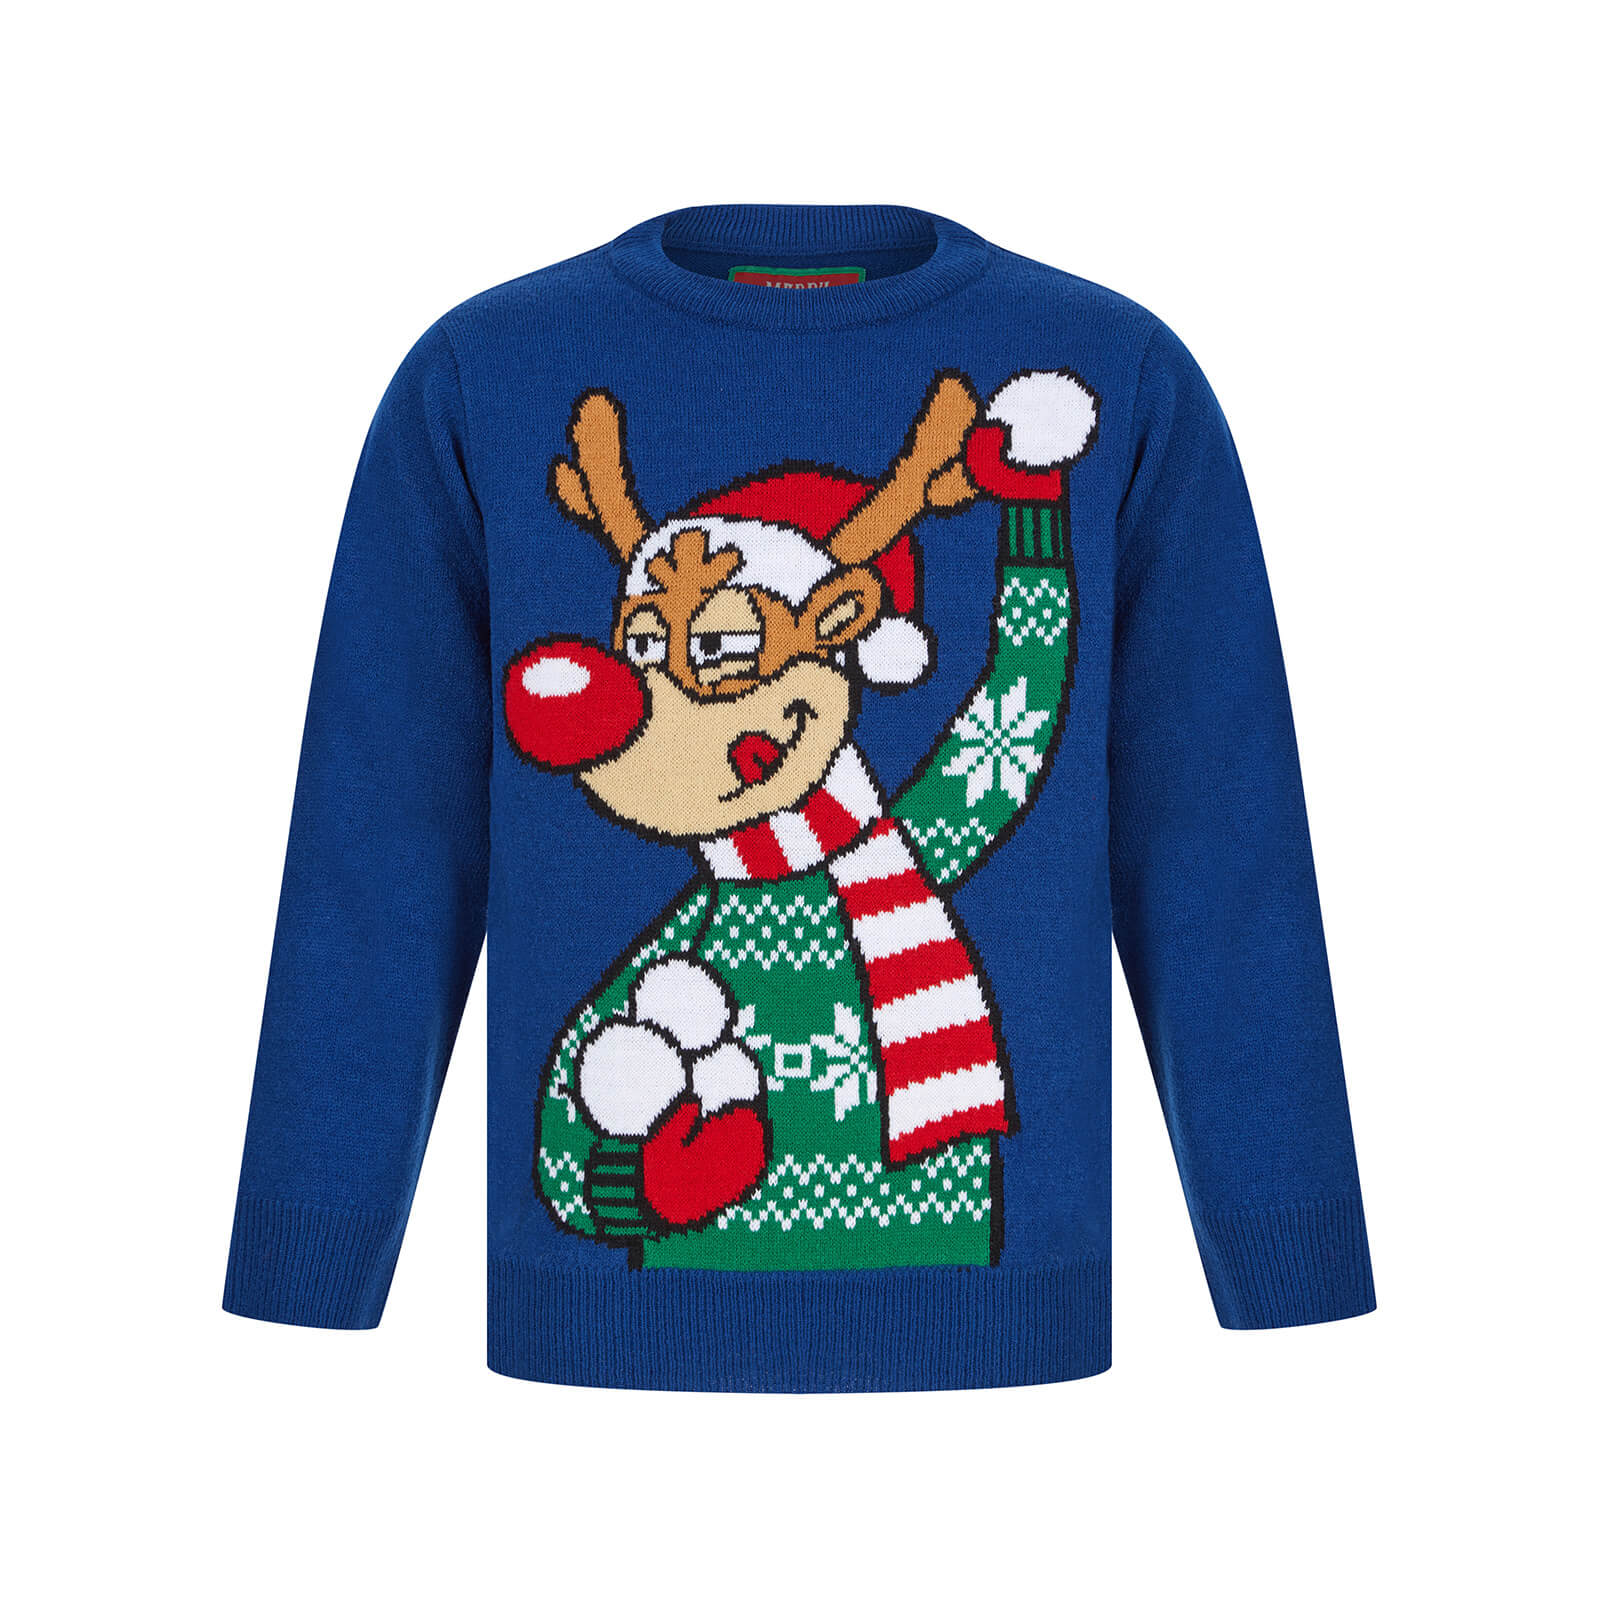 Vánoční svetr s Rudolfem modrý